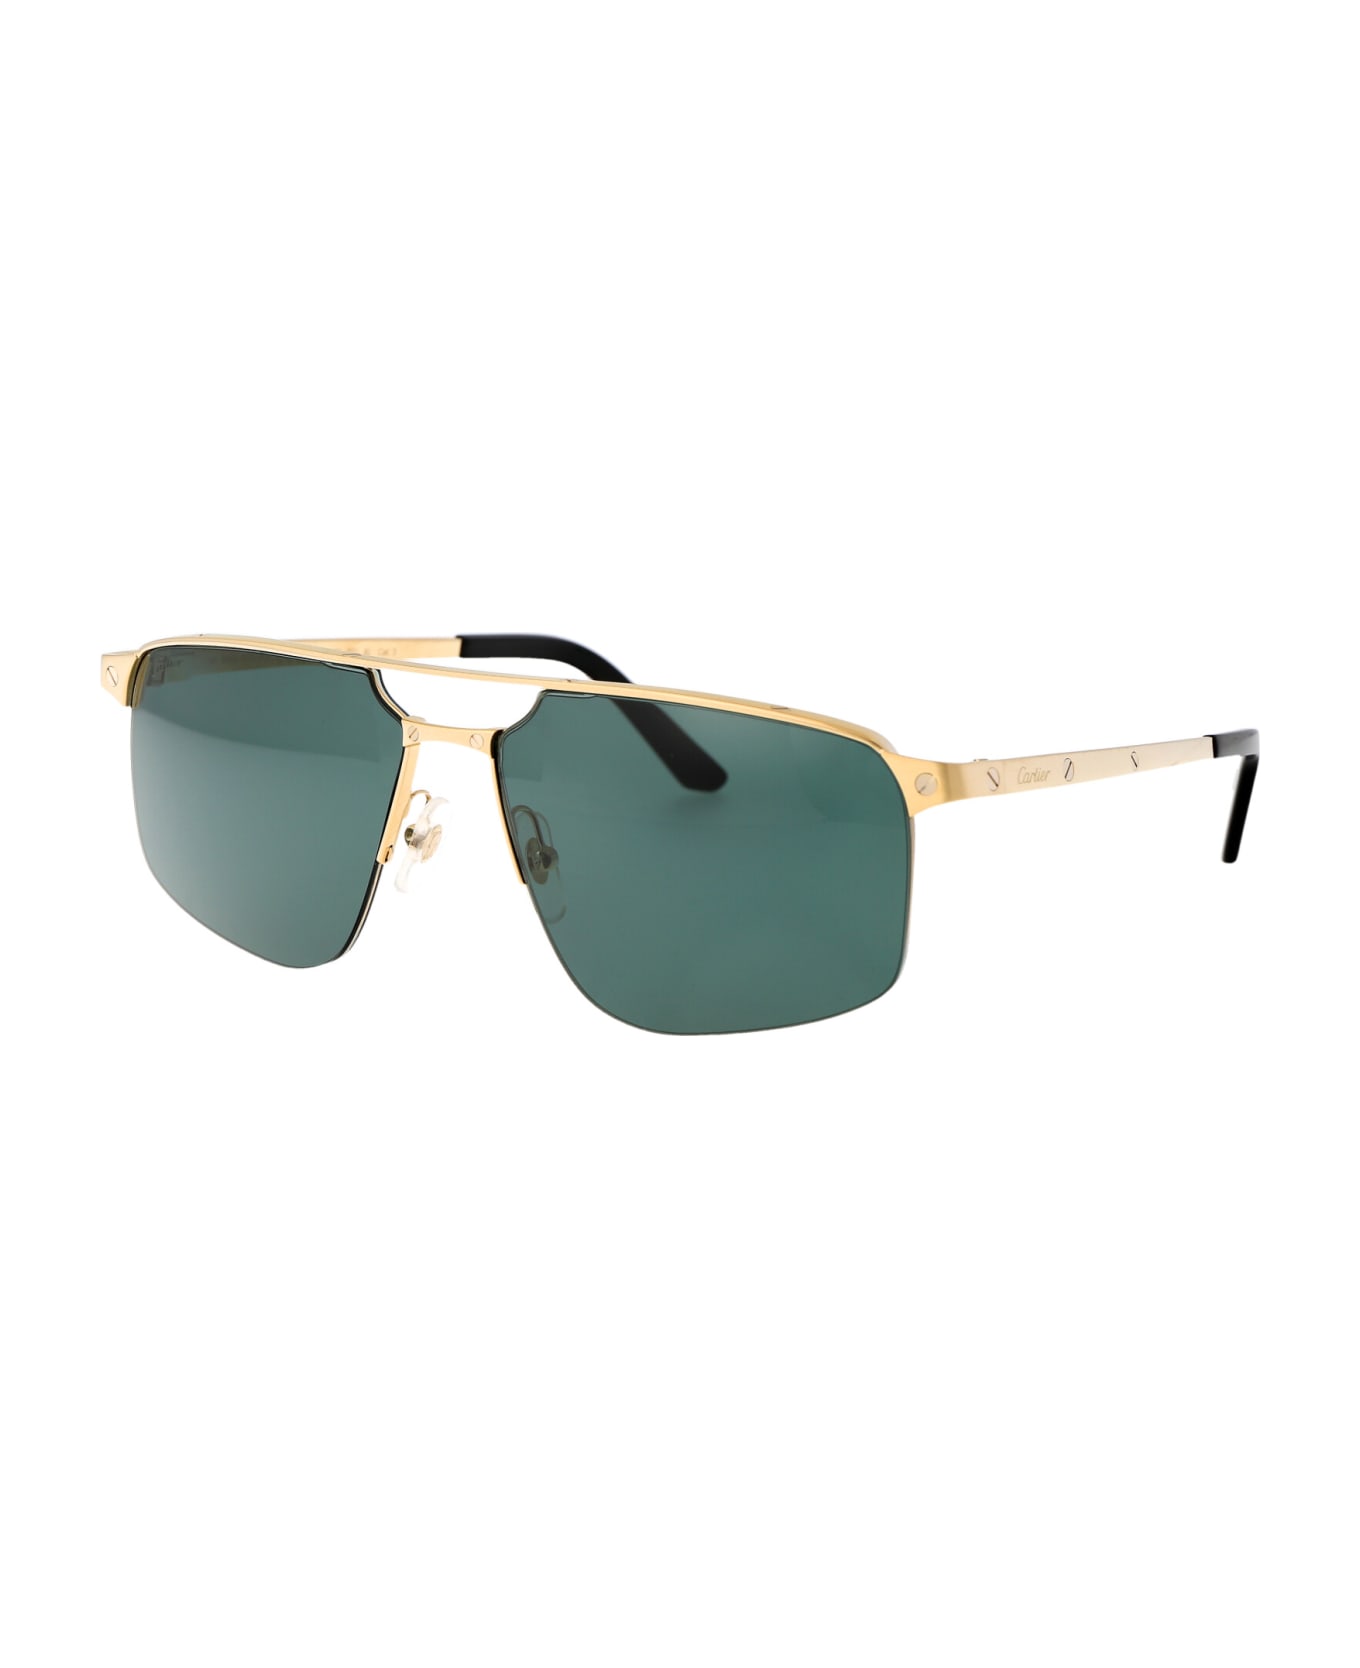 Cartier Eyewear Ct0385s Sunglasses - 002 GOLD GOLD GREEN